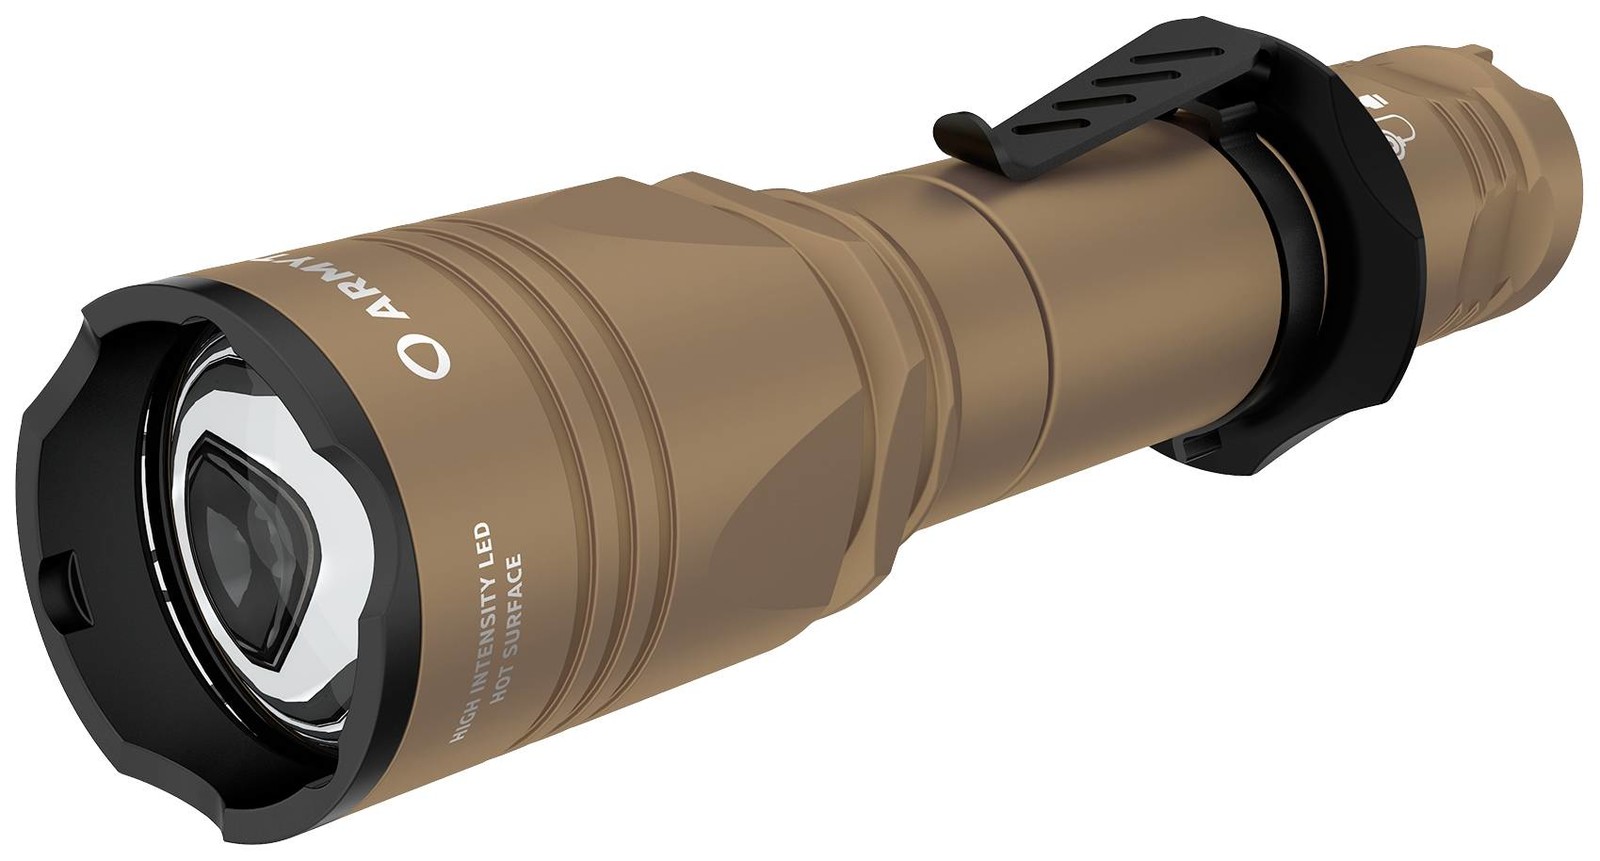 ArmyTek Dobermann Pro Magnet USB Sand Warm LED kapesní svítilna poutko na ruku, s brašnou napájeno akumulátorem 1400 lm 164 g